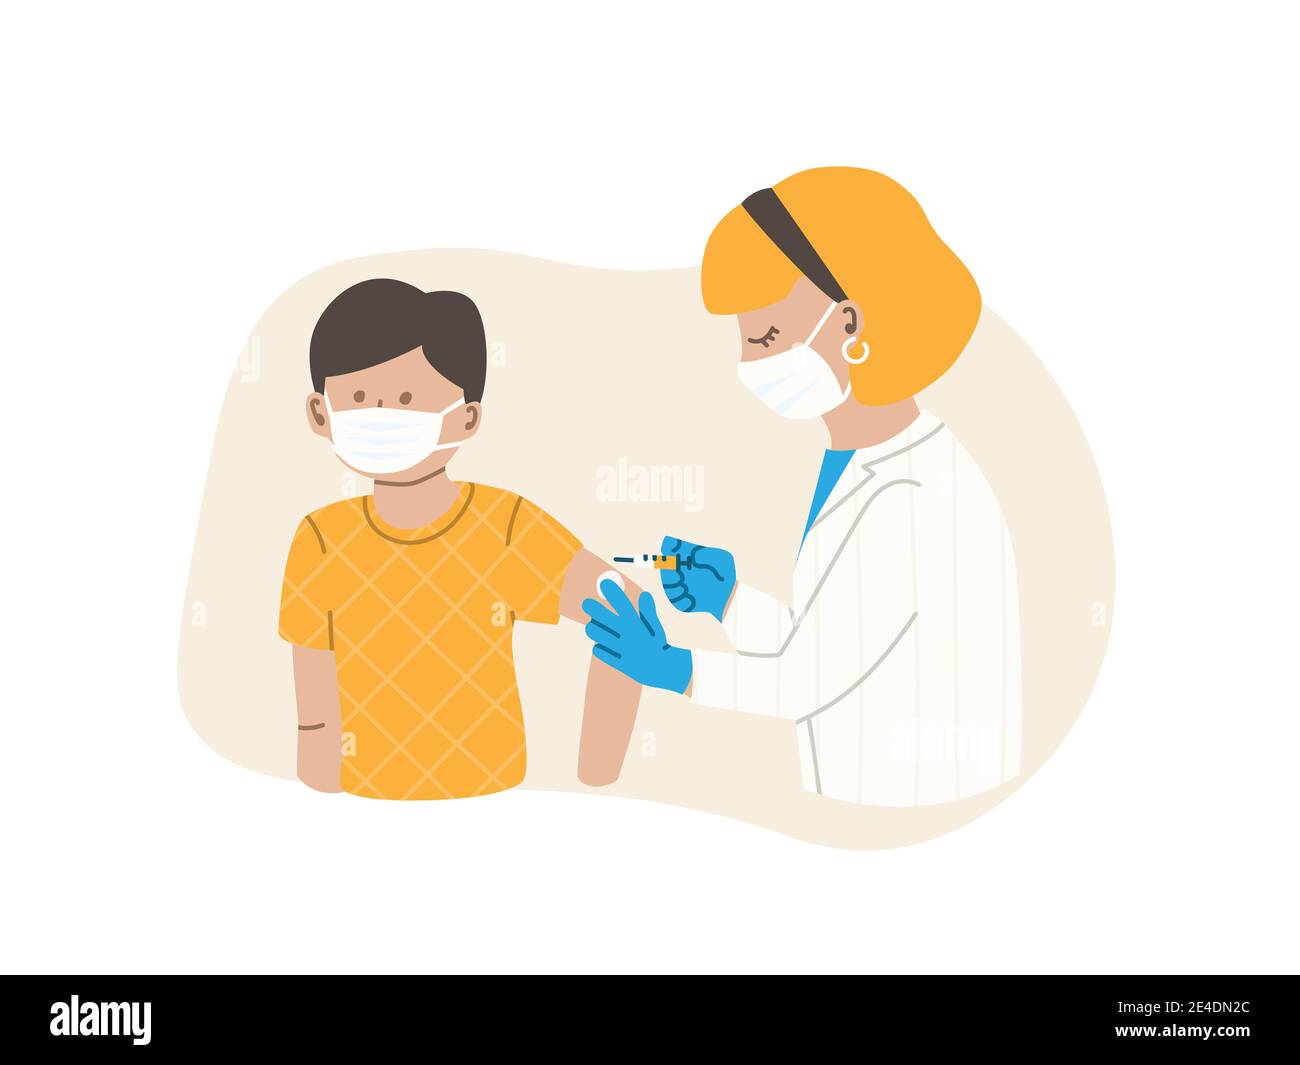 El médico o la enfermera inyecta la vacuna. El paciente es un niño o un adolescente, un niño. Concepto de vacunación contra la gripe. Vacuna contra el coronavirus. Ilustración plana vectorial EPS 10. Ilustración del Vector